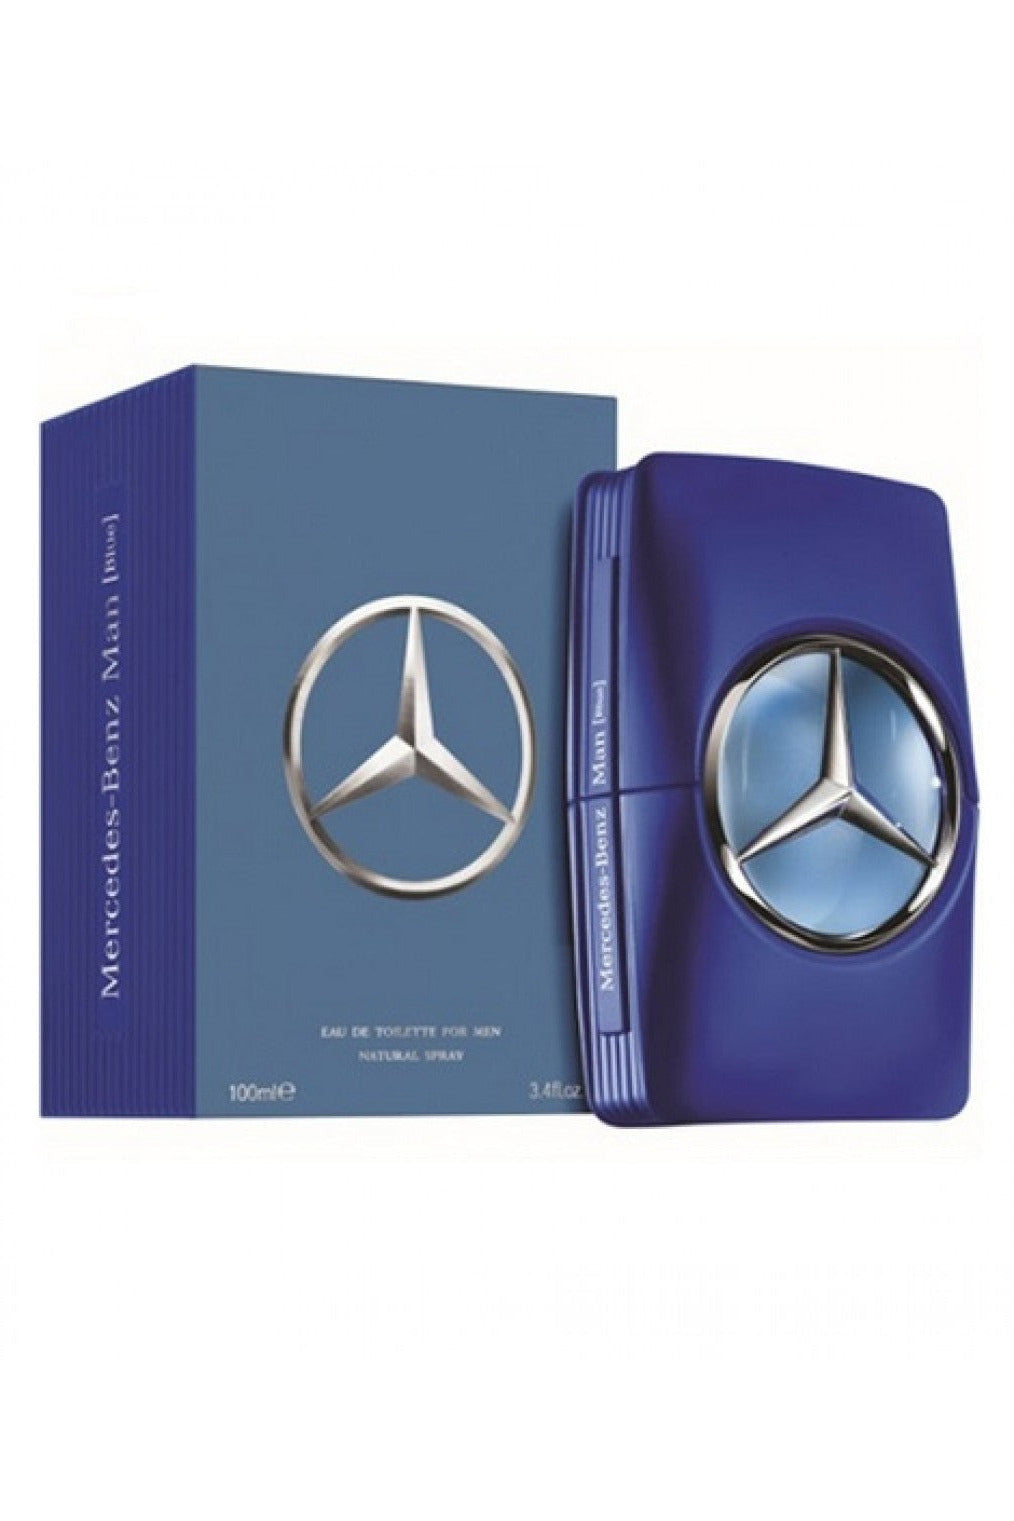 Buy Mercedes Benz Men EDT - 100ml in Pakistan